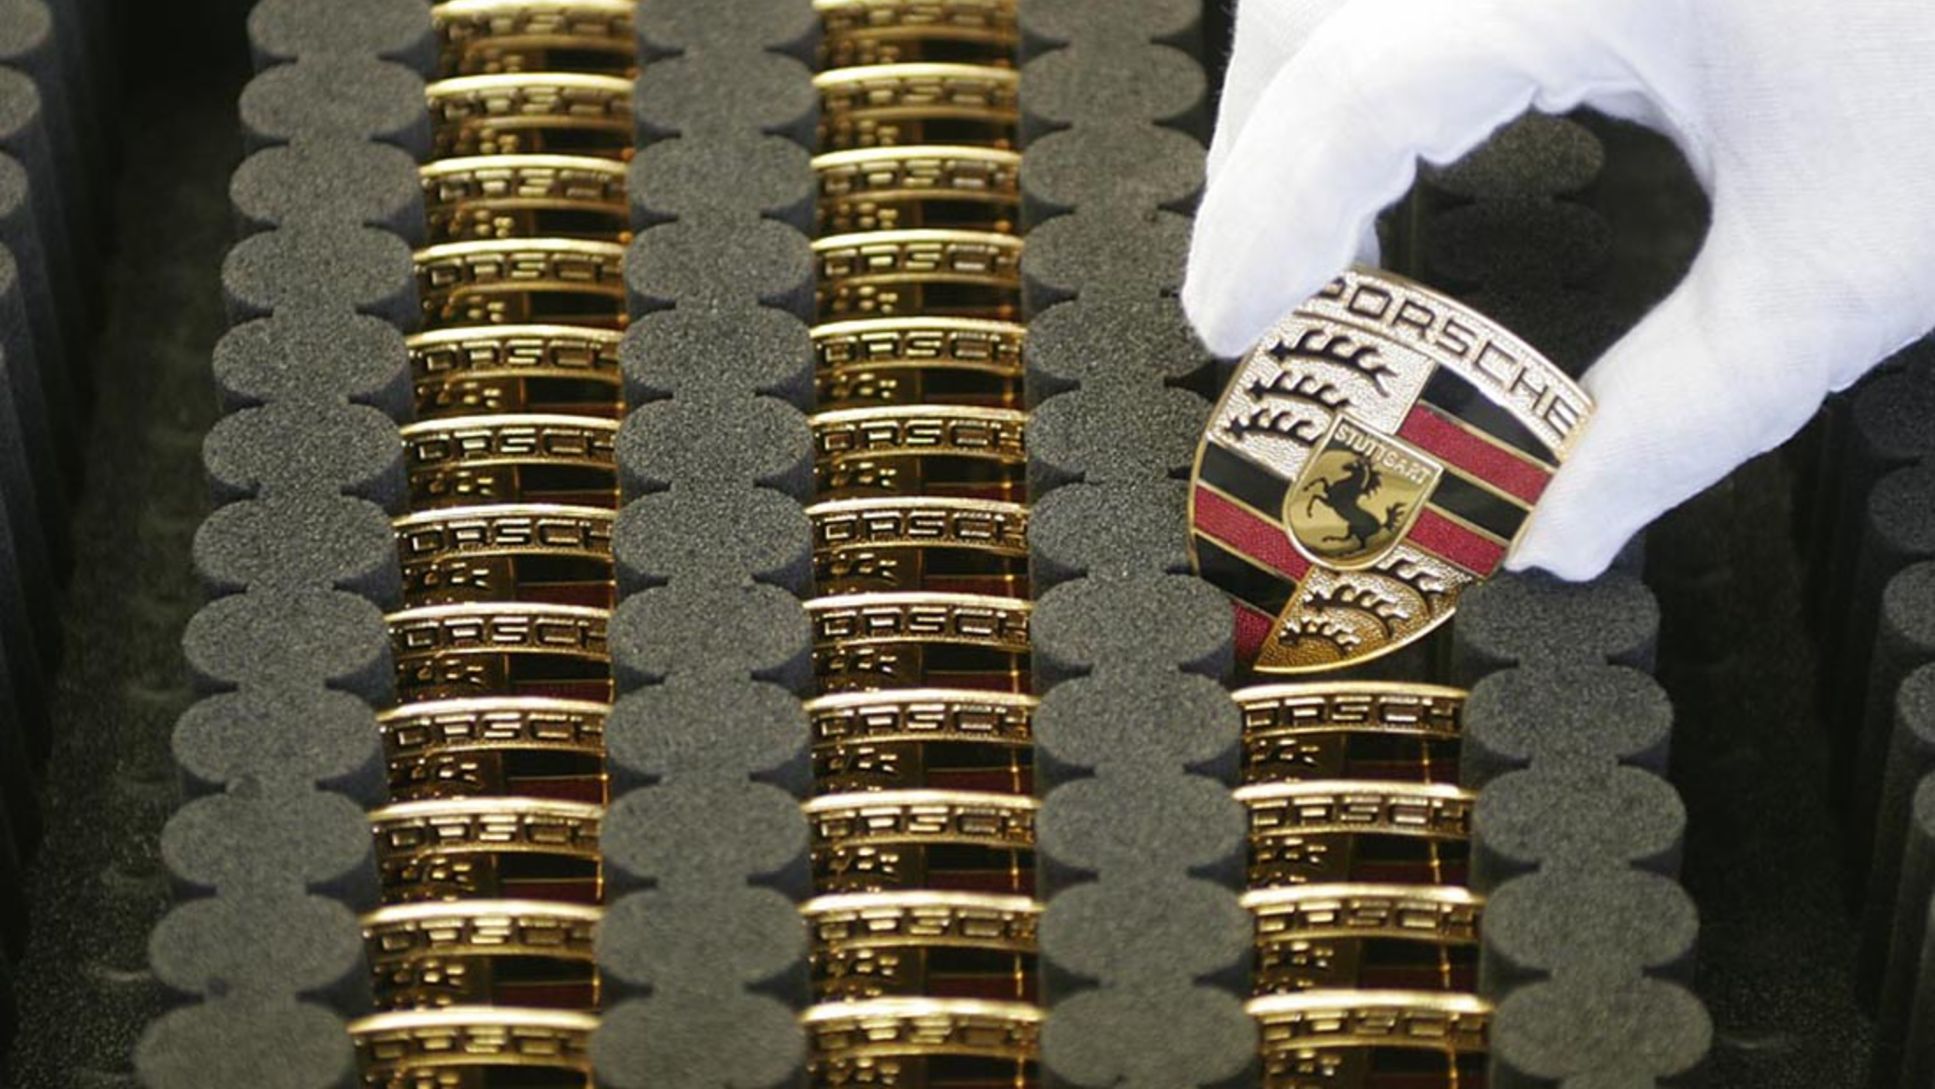 Wappen, 2014, Porsche AG